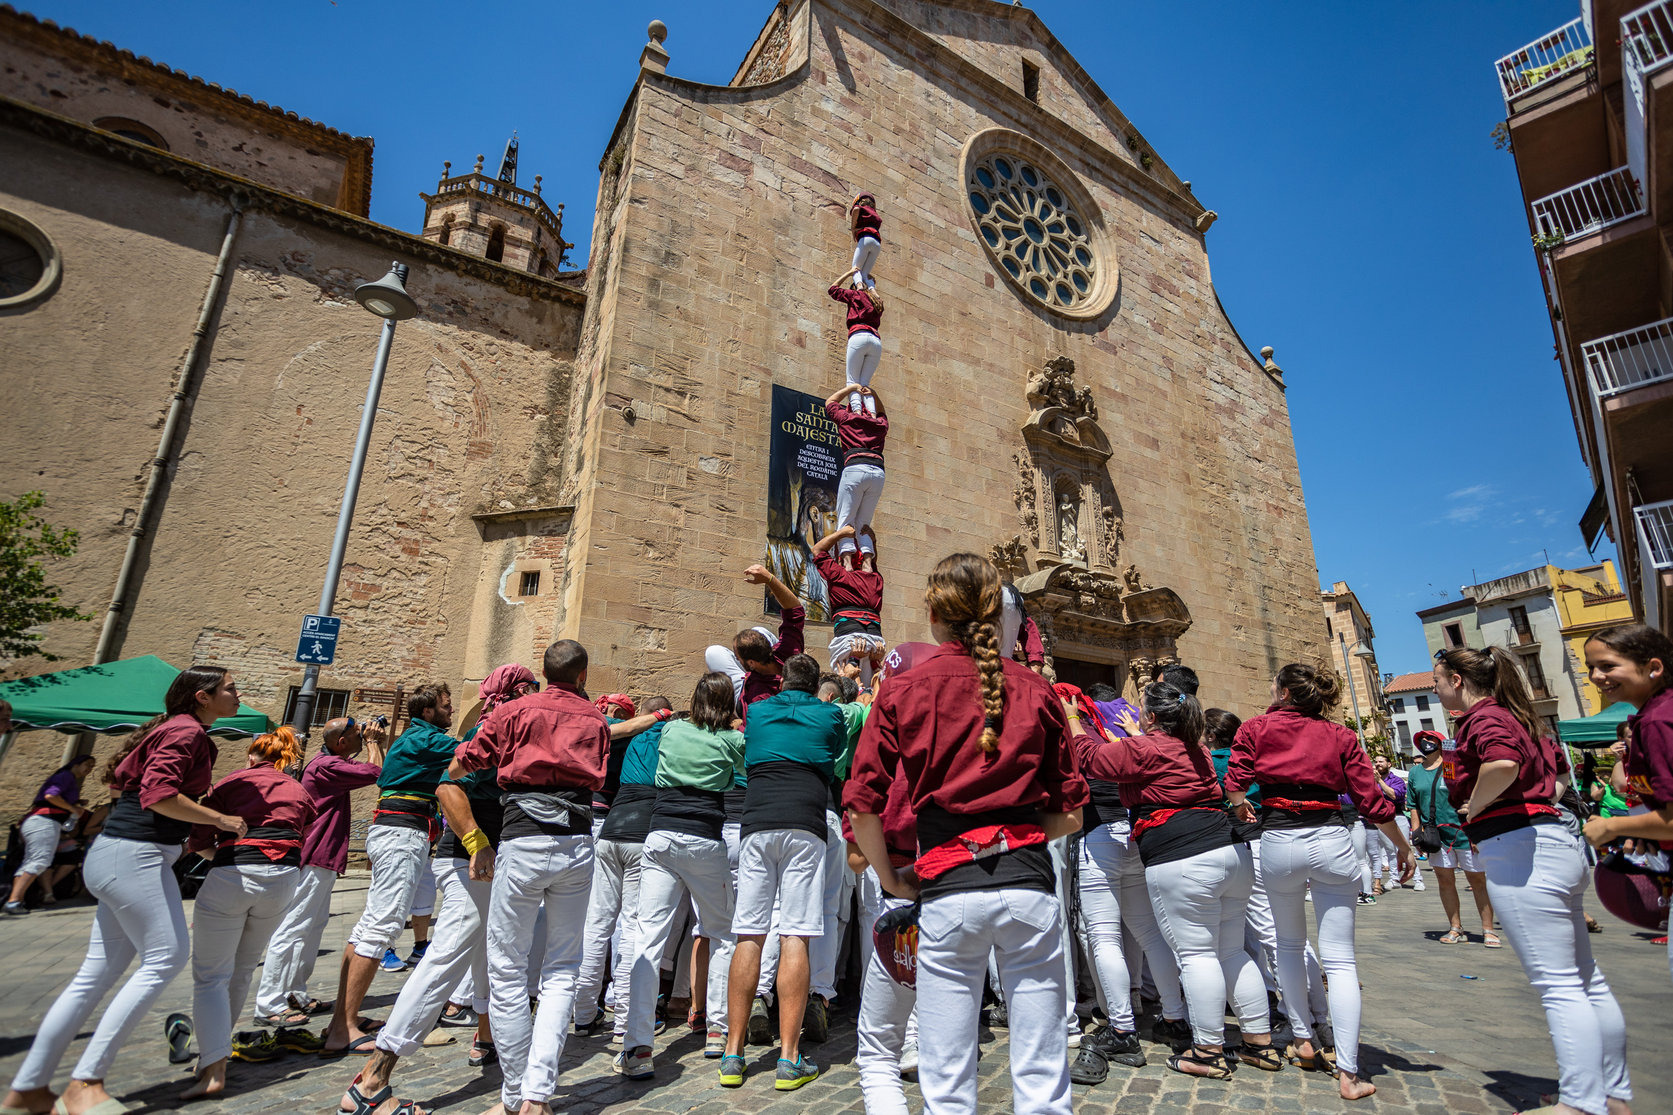 Les colles castellers del Vallès Oriental s'exhibiran a Parets aquest diumenge